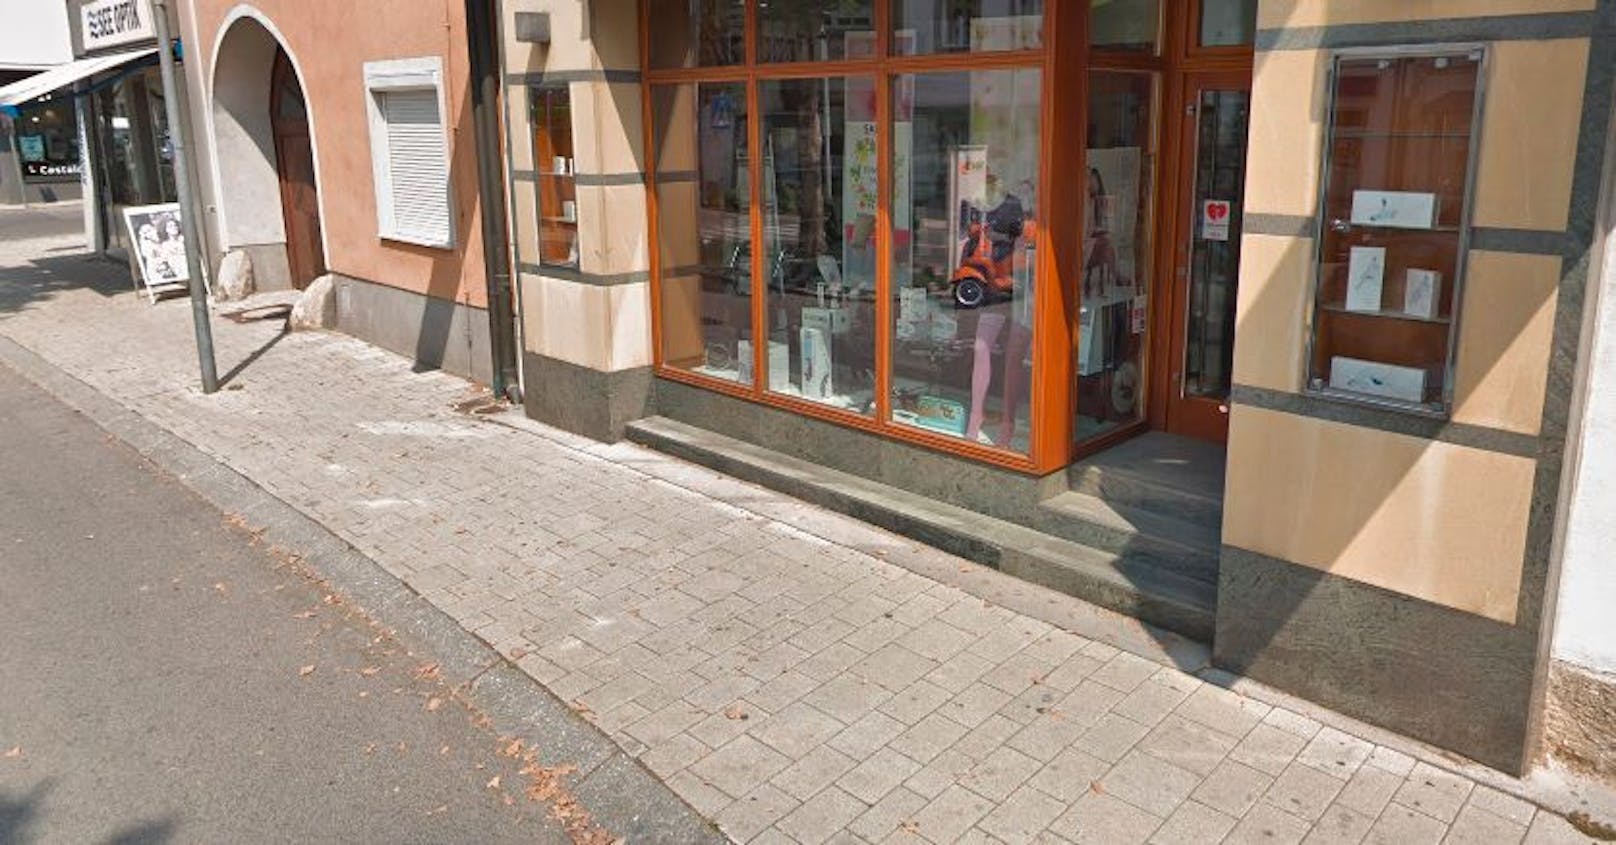 Ein Geschäftseingang im Zentrum von Neusiedl am See. (Symbolbild)